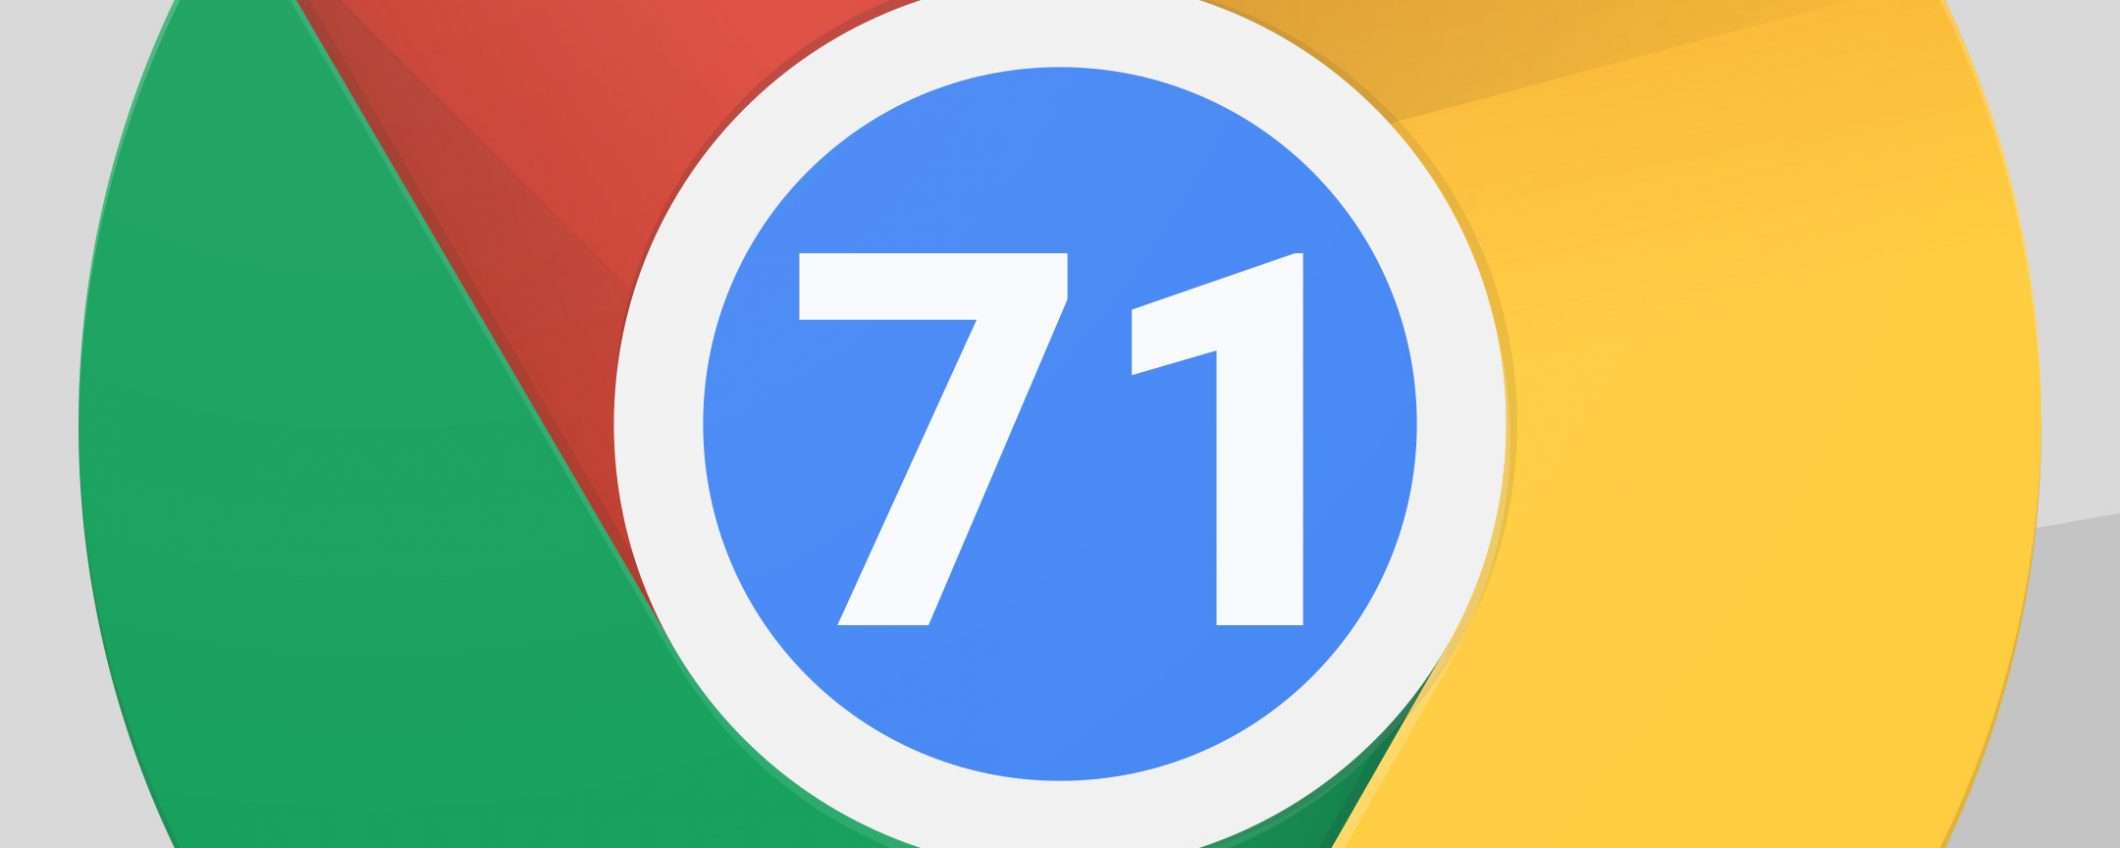 Chrome 71 in download: le novità del browser